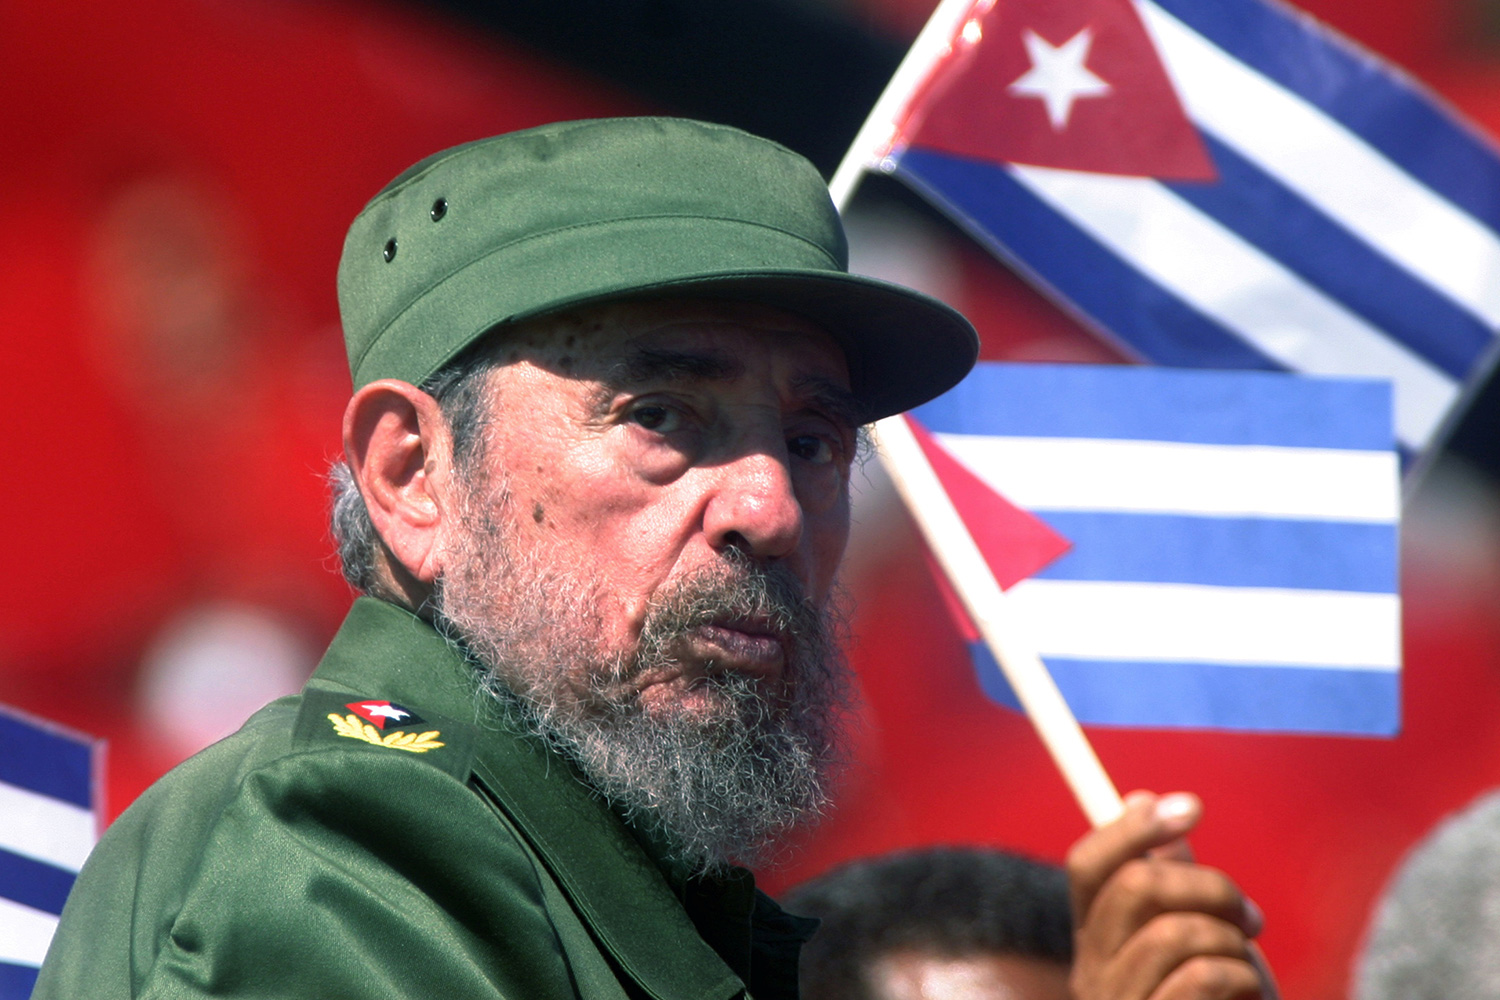 Hashtag Fidel Castro